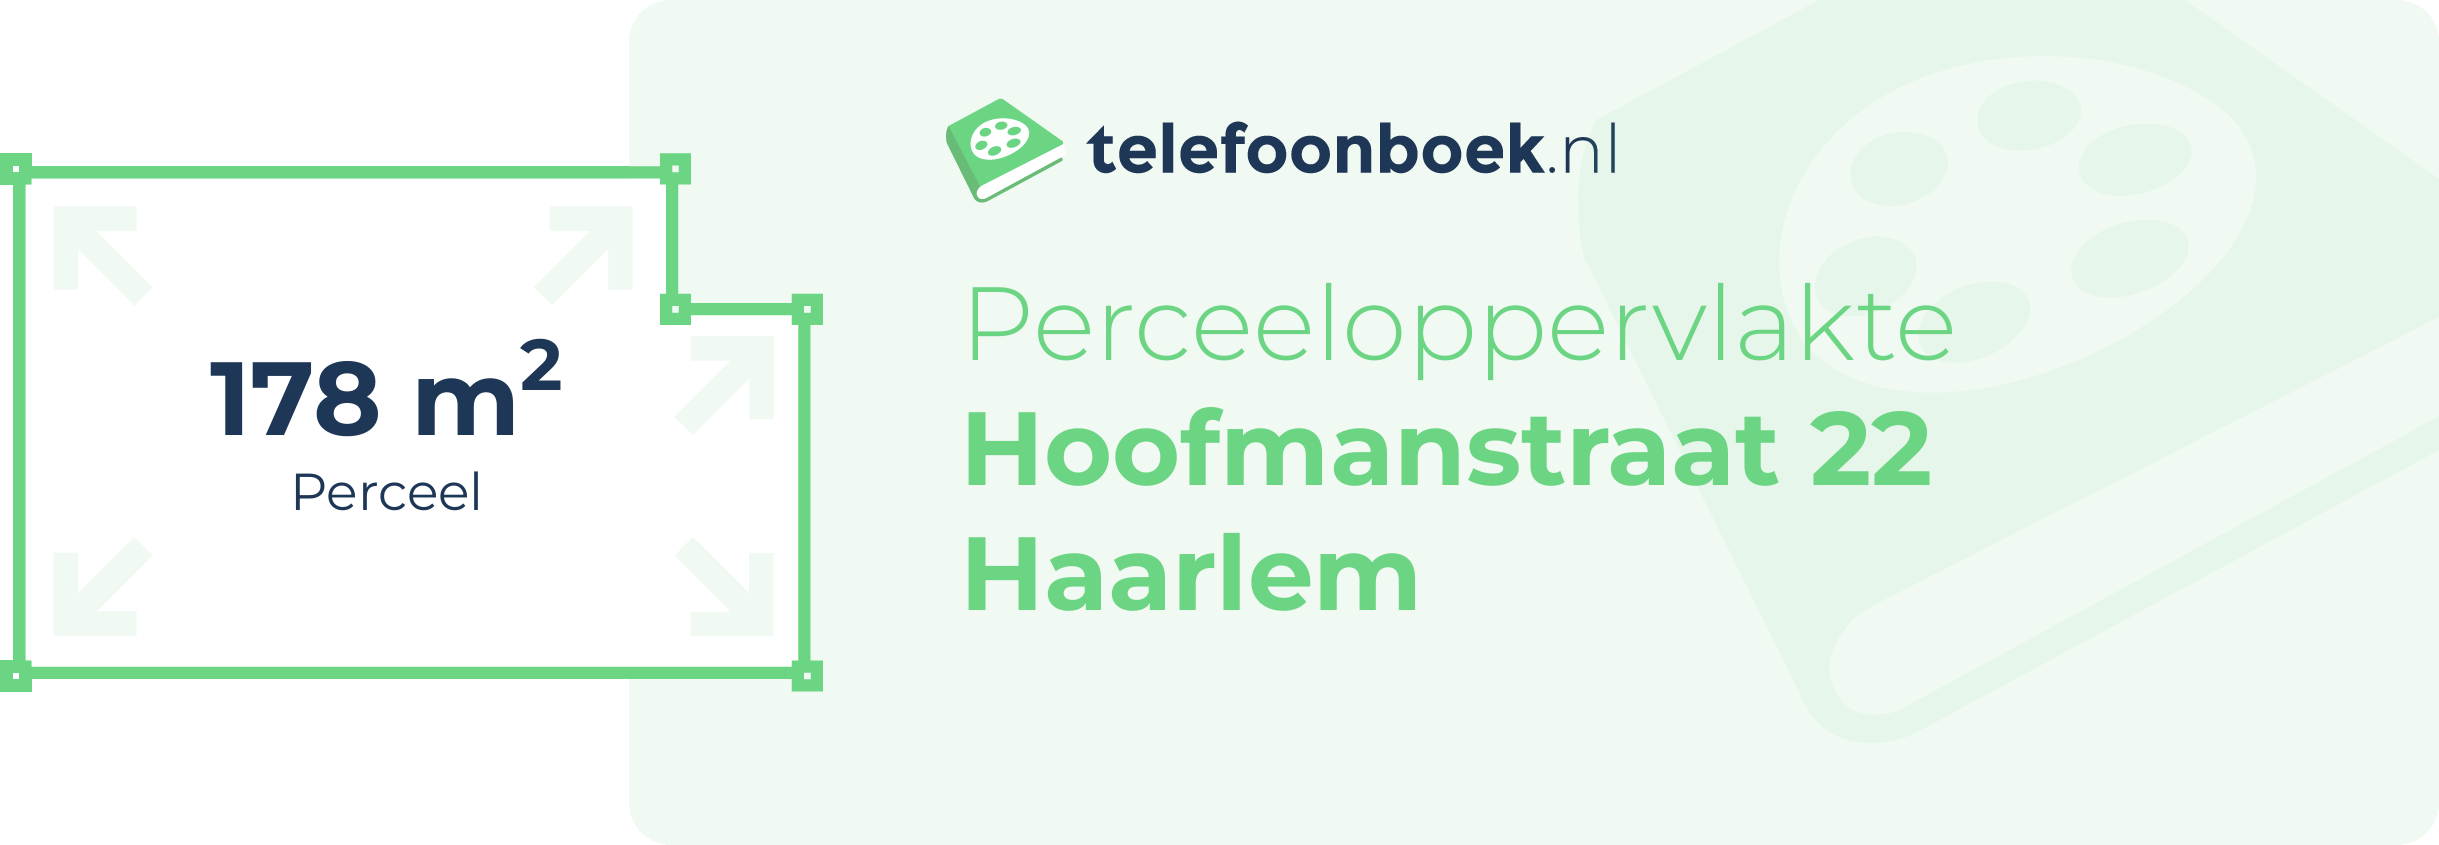 Perceeloppervlakte Hoofmanstraat 22 Haarlem